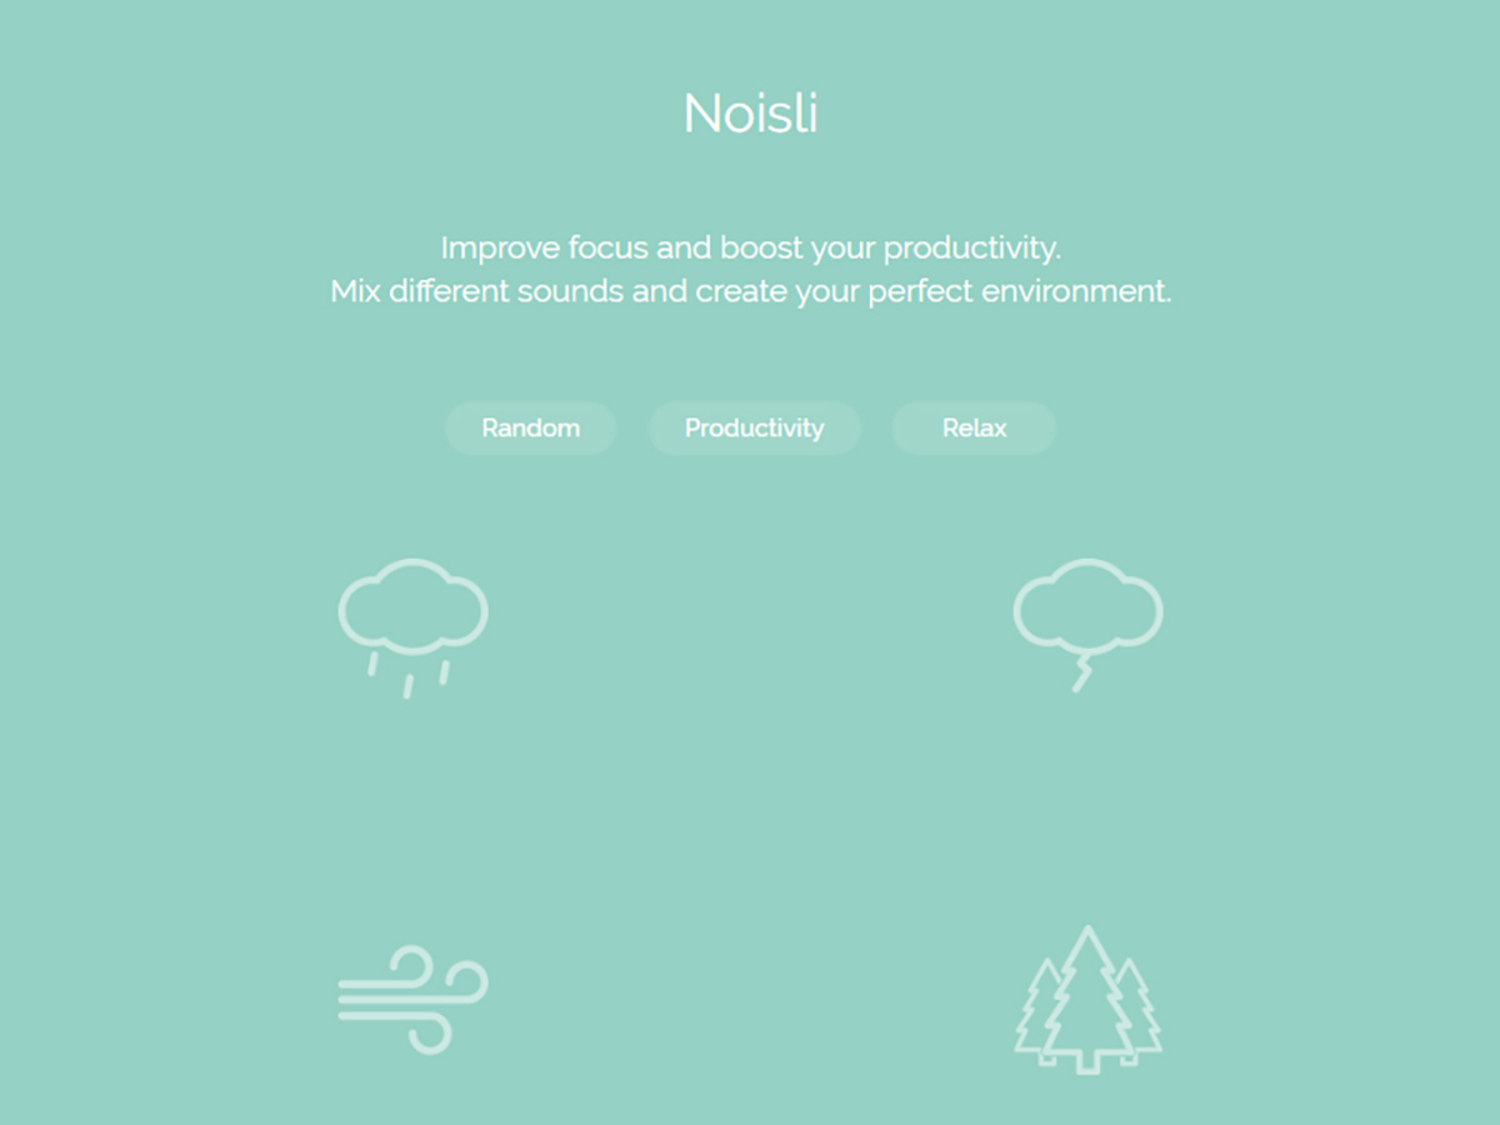 The Noislii app interface.